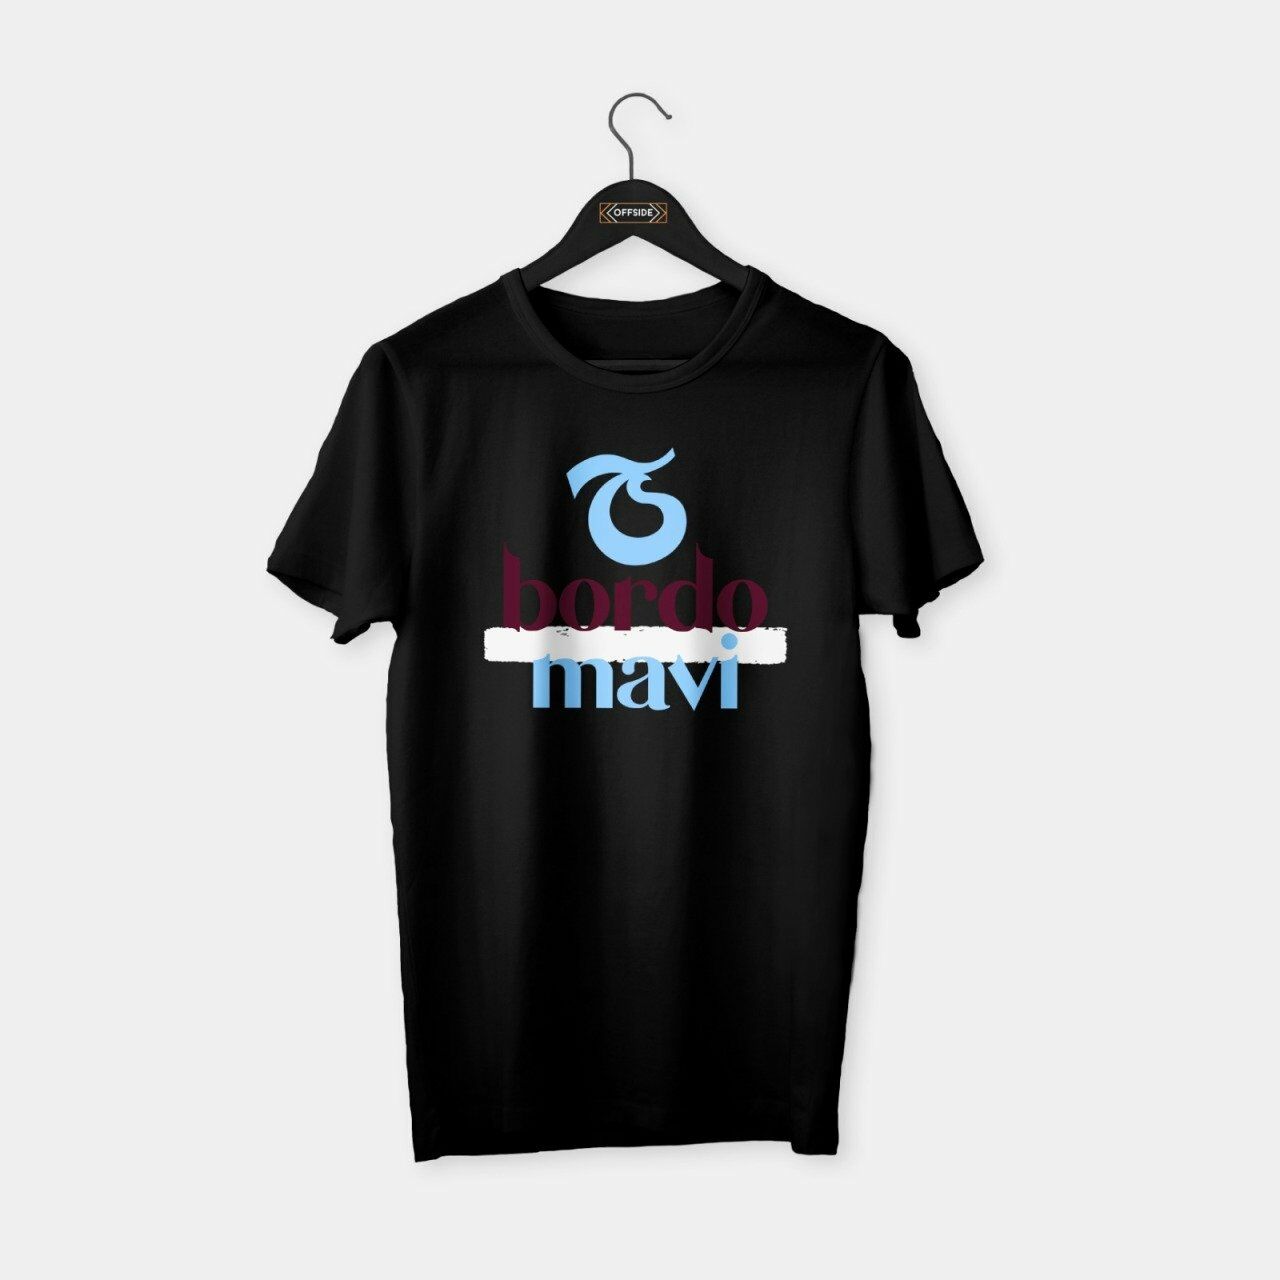 Trabzon - Bordo Mavi T-shirt